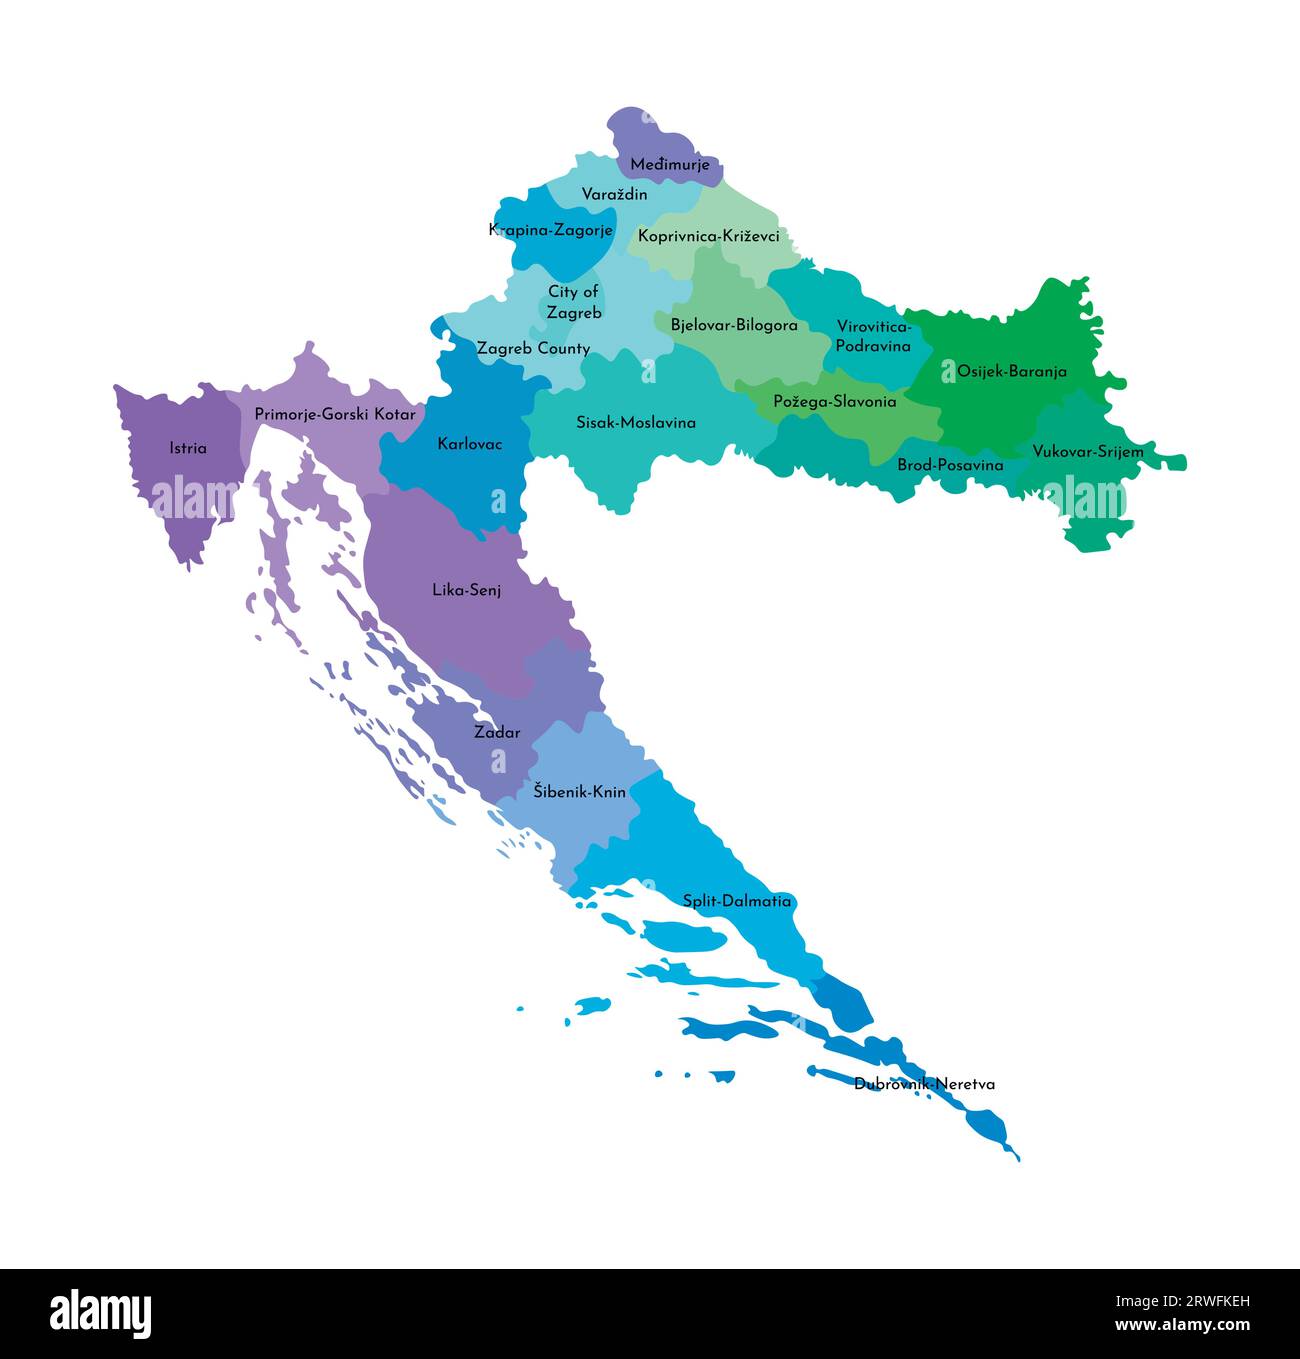 Vektor-isolierte Illustration einer vereinfachten Verwaltungskarte Kroatiens. Grenzen und Namen der Regionen. Mehrfarbige Silhouetten. Stock Vektor